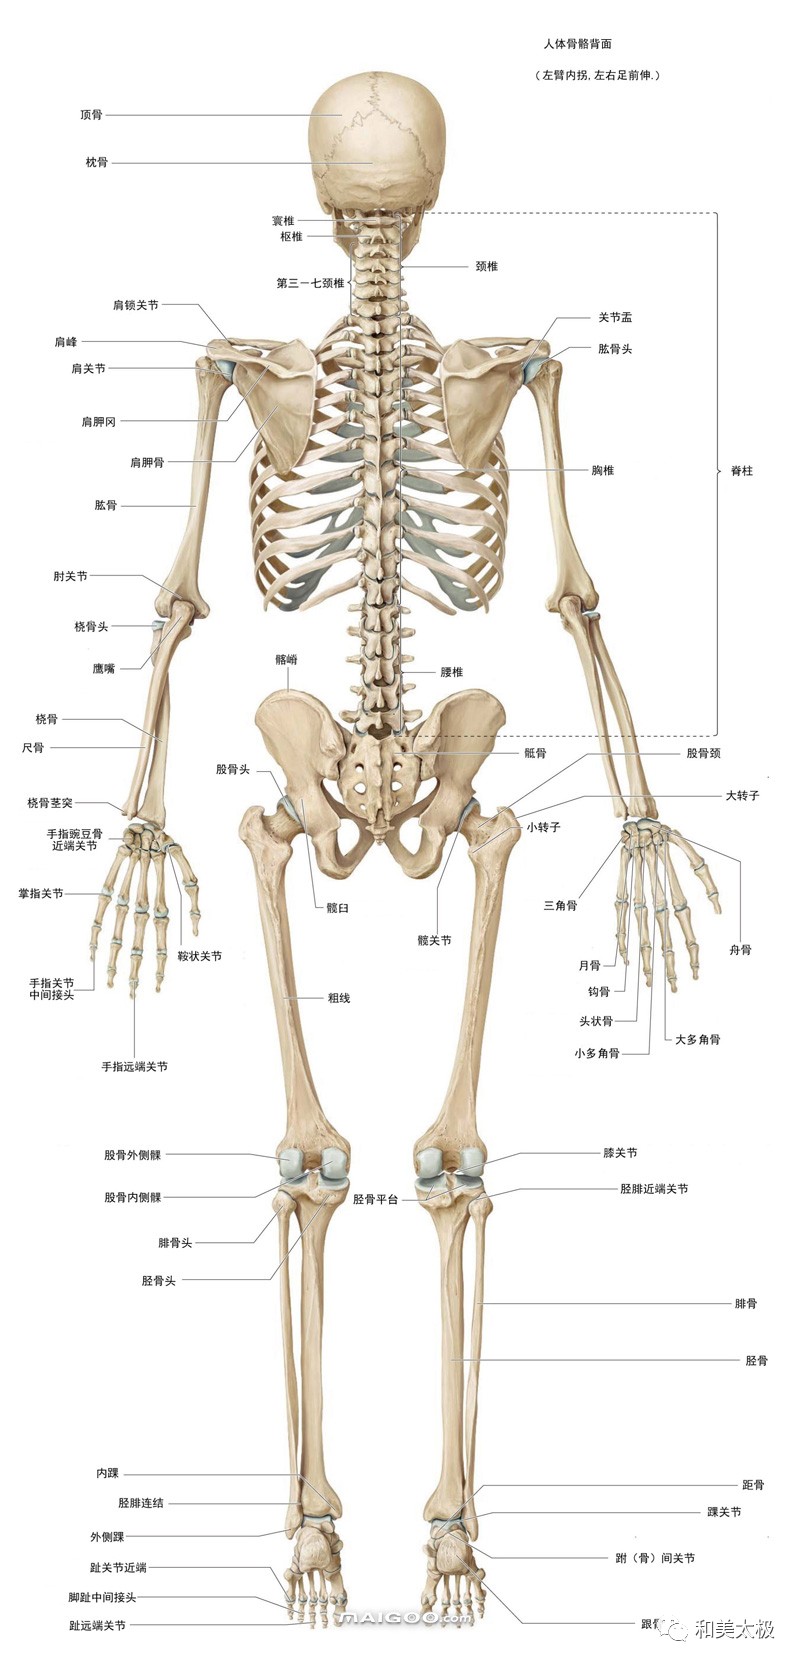 儿童的骨头实际上应是217～218块,初生婴儿的骨头多达305块,因为